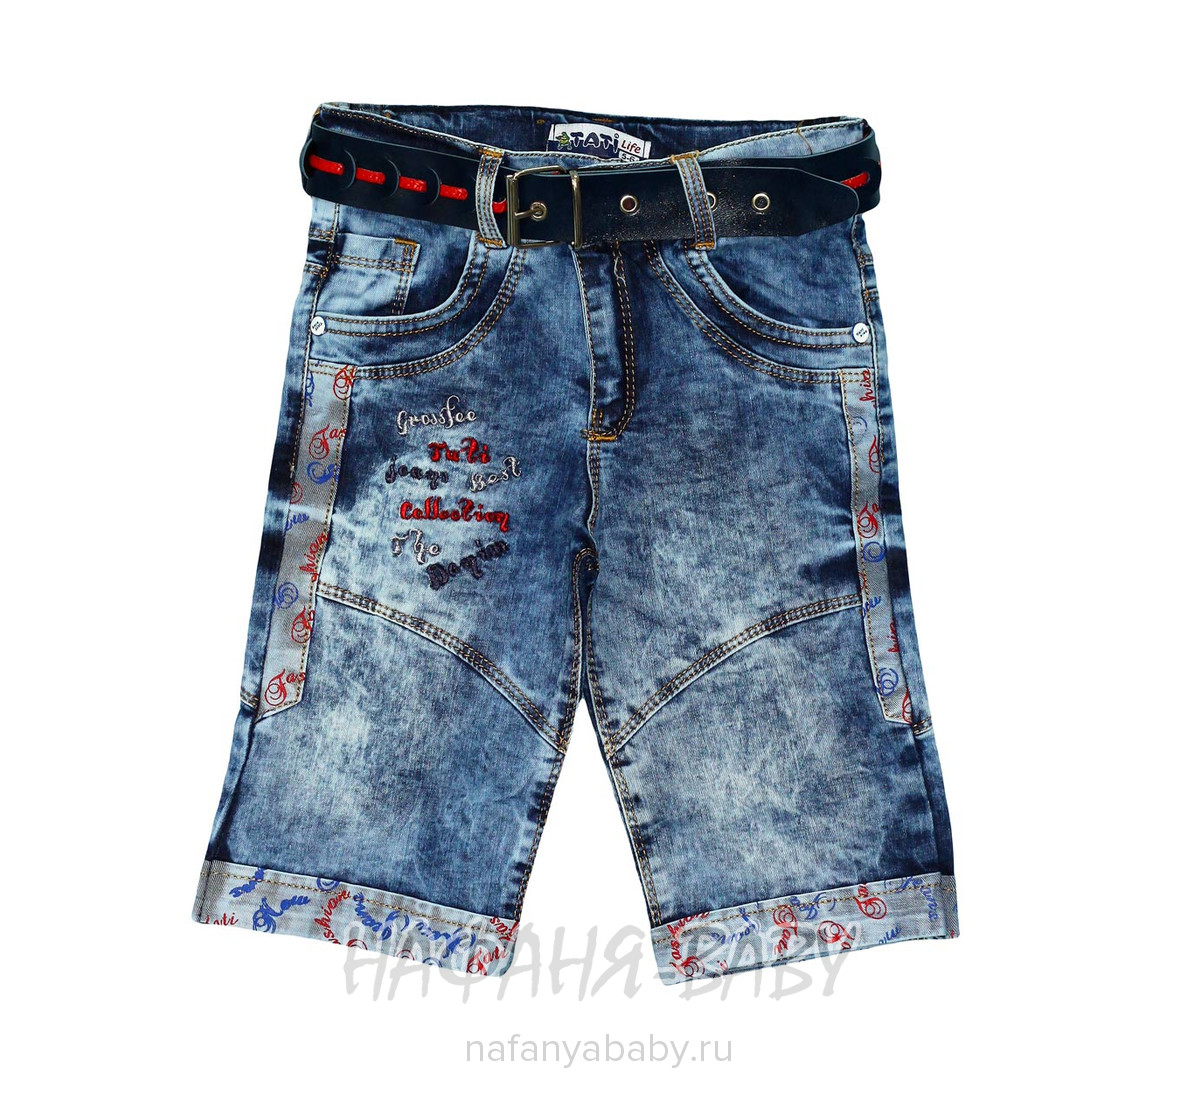 Детские джинсовые шорты TATI JEANS, купить в интернет магазине Нафаня. арт: 5007.